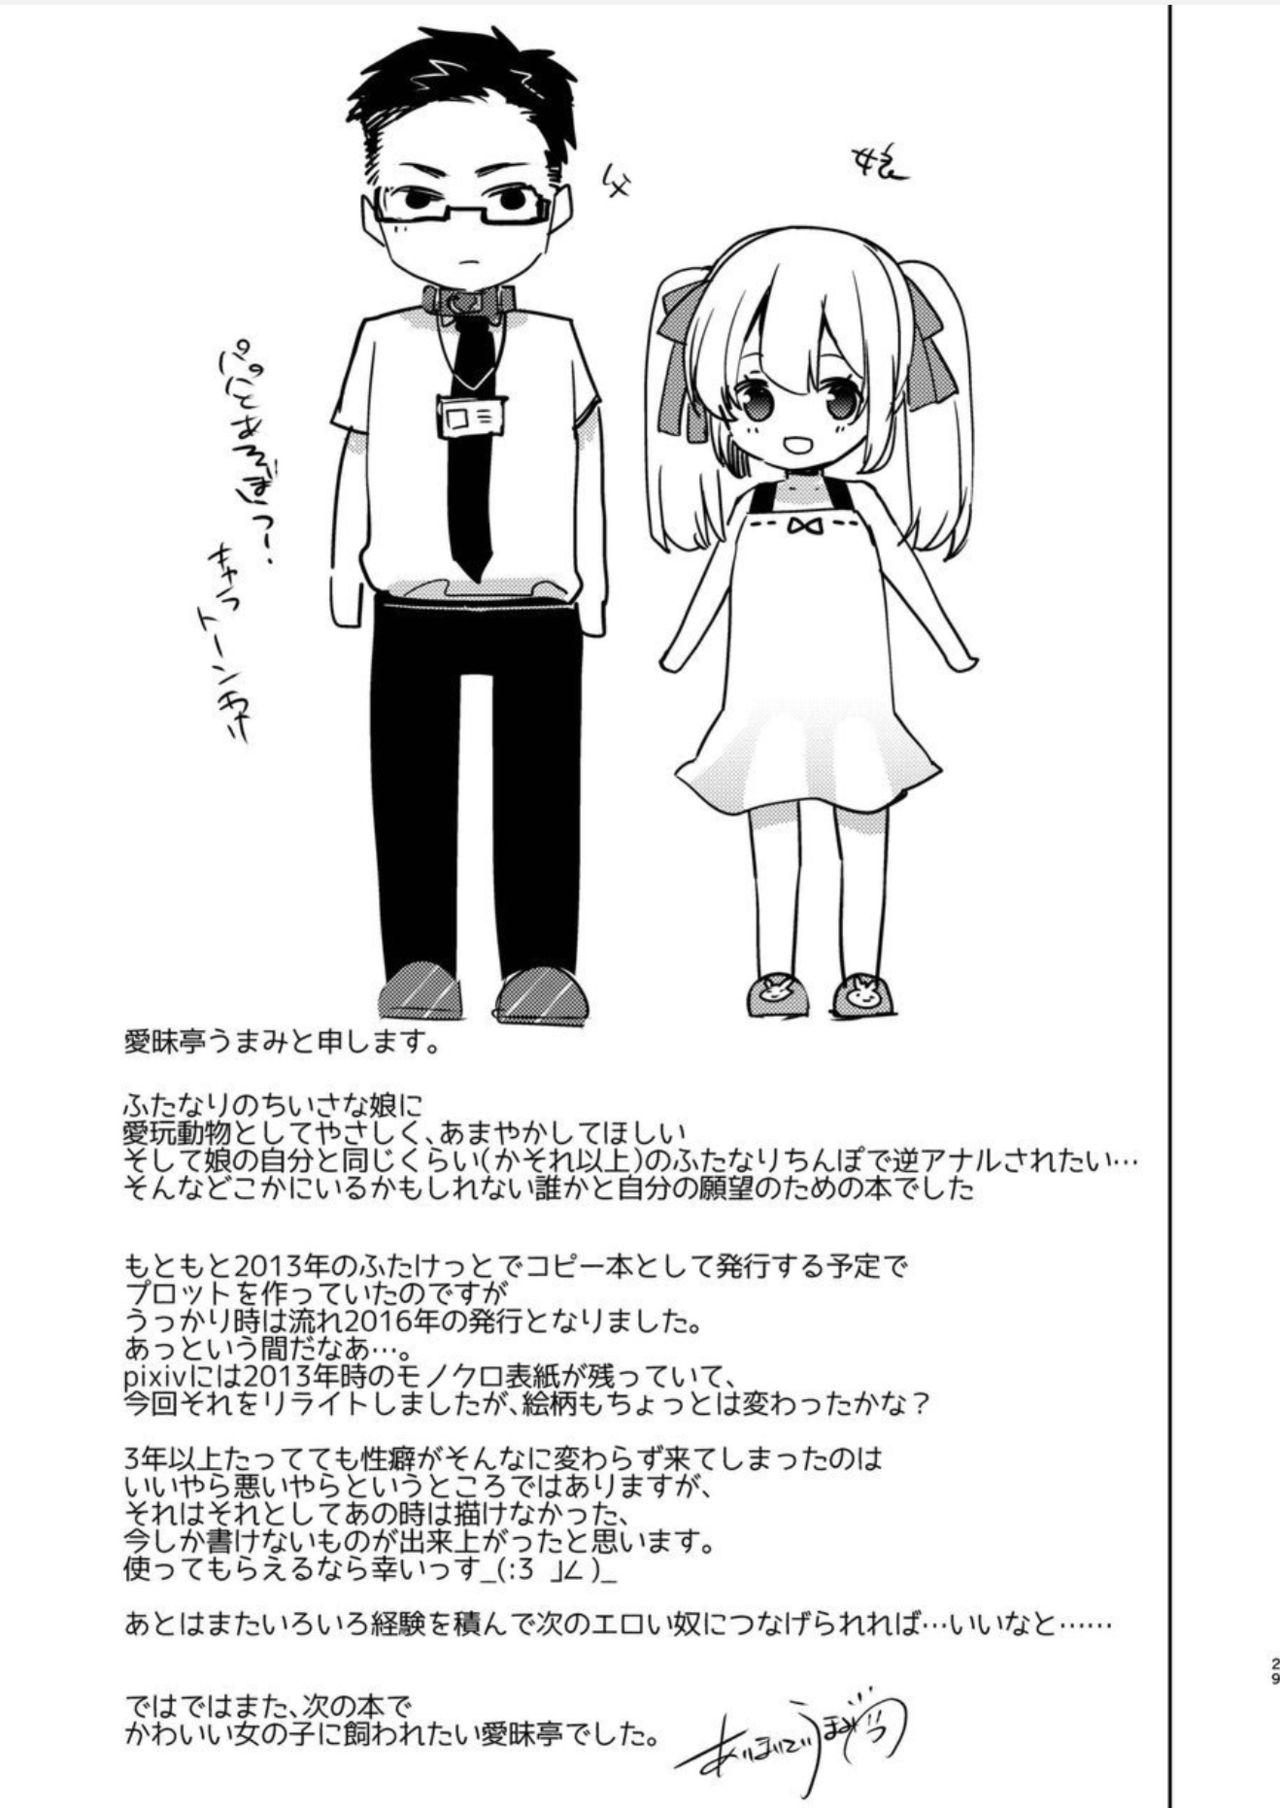 Yoiko no Futanari Gyaku Anal Manga "Papa to Asobou!" | Futanari Anal Manga for Good Children: "Play with Daddy!" 28